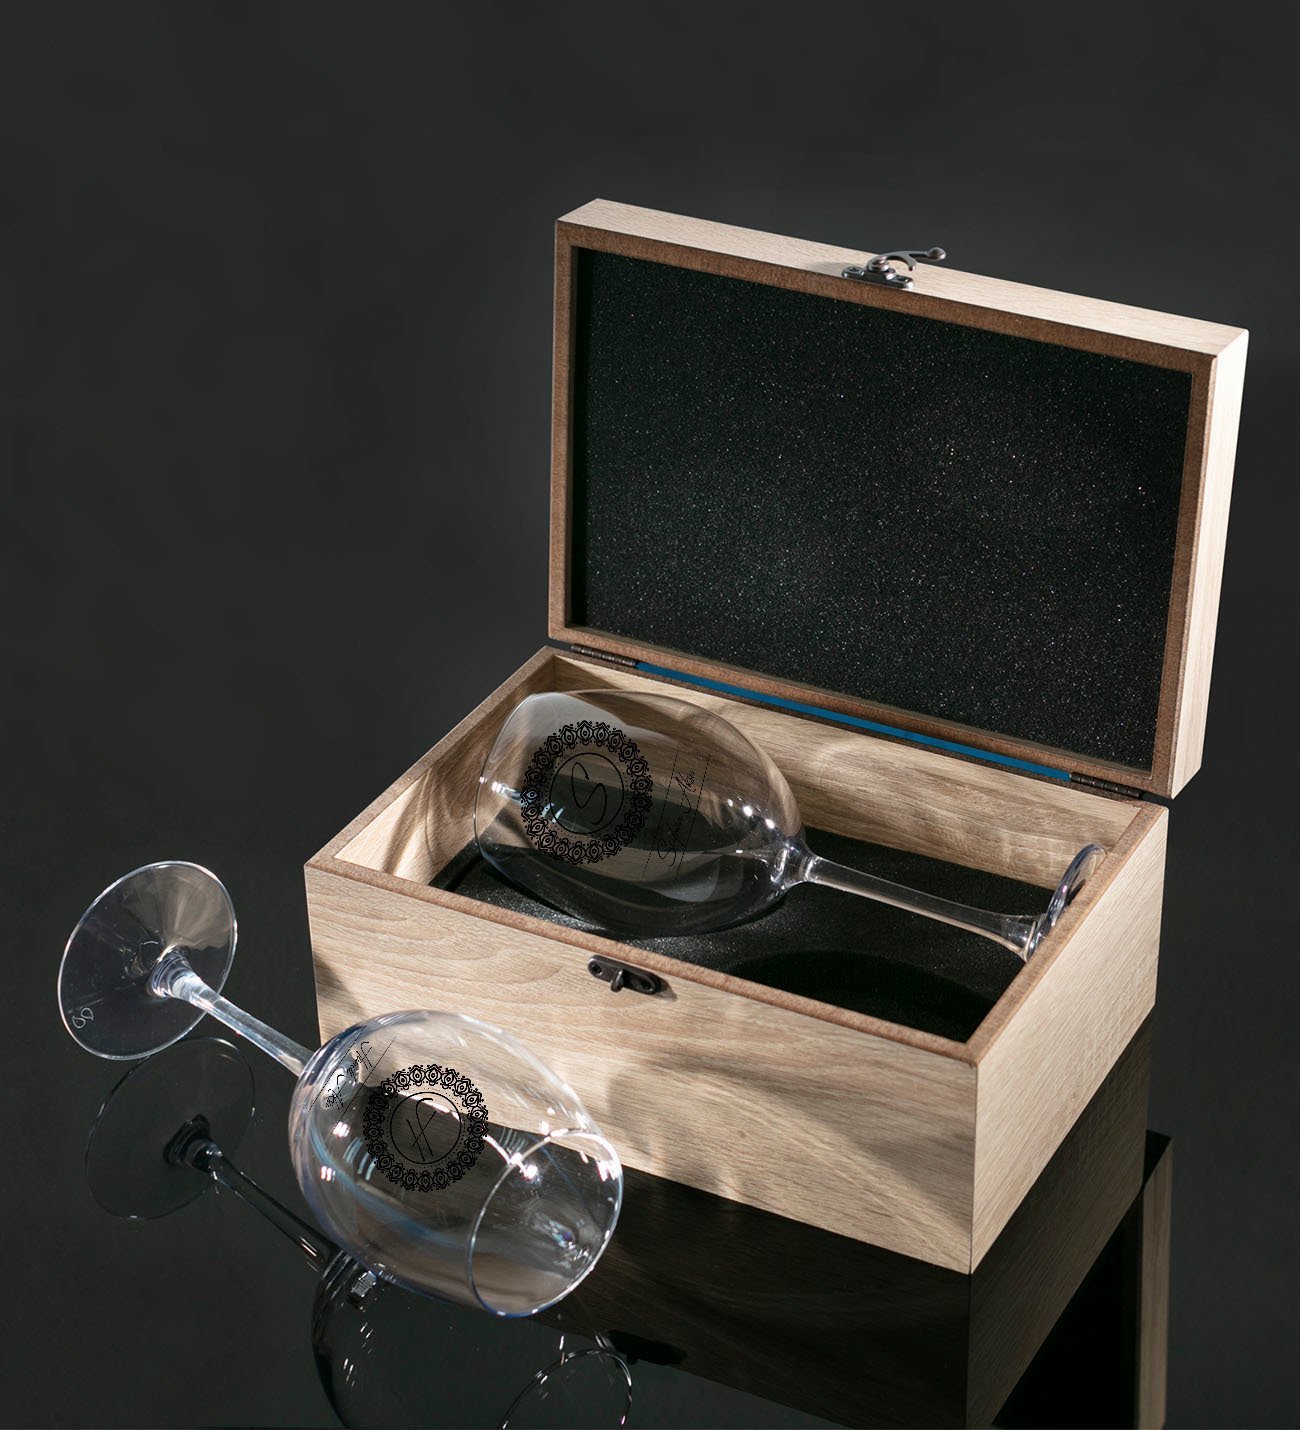 Kişiye Özel Ahşap Kutuda İsimli İkili Şarap Kadehi Hediye Seti Model 2